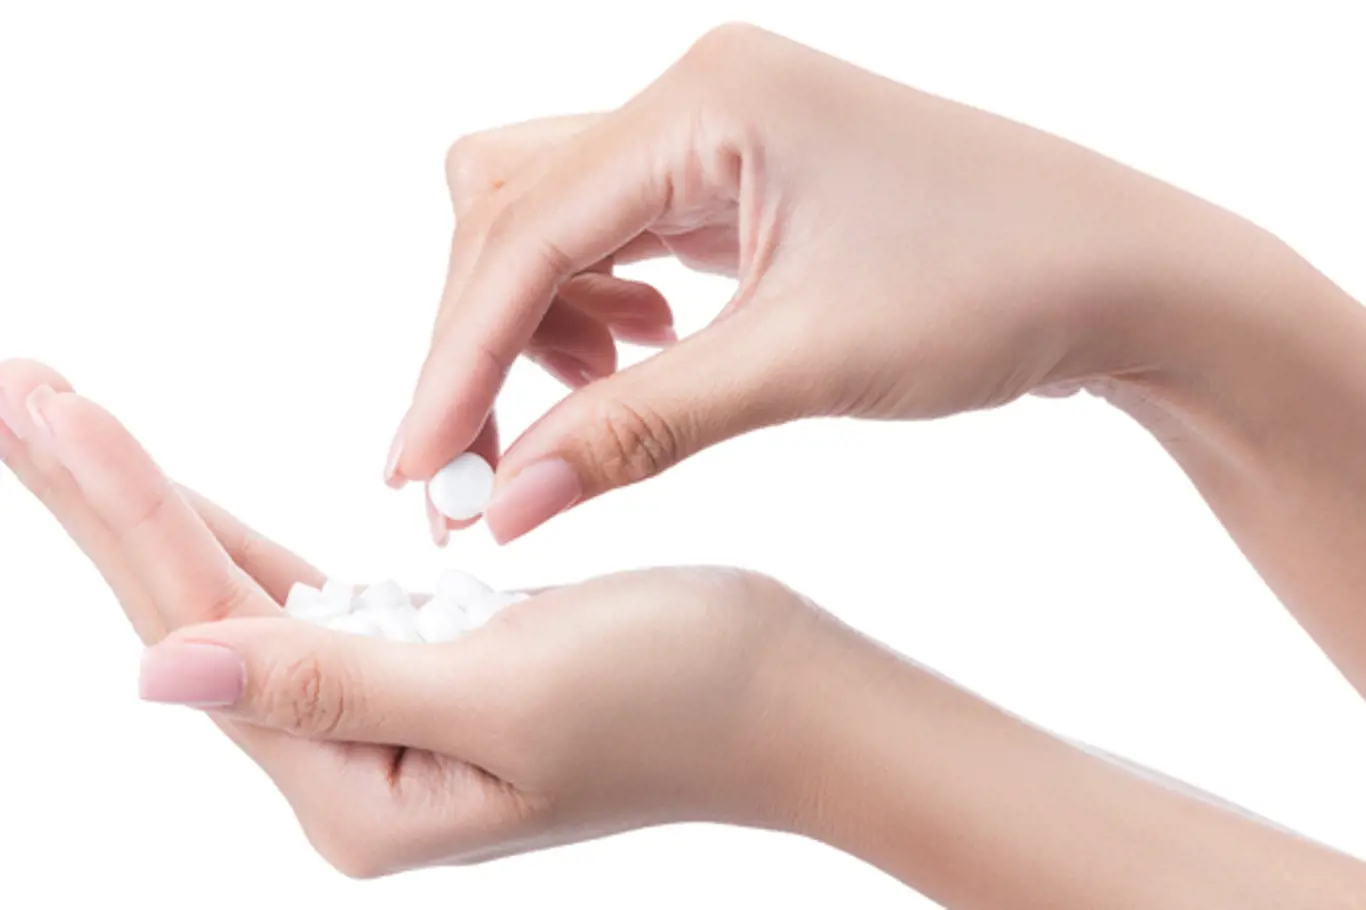 Devět úžasných triků, jak doma využít aspirin! Jsou vyzkoušené a fakt fungují!